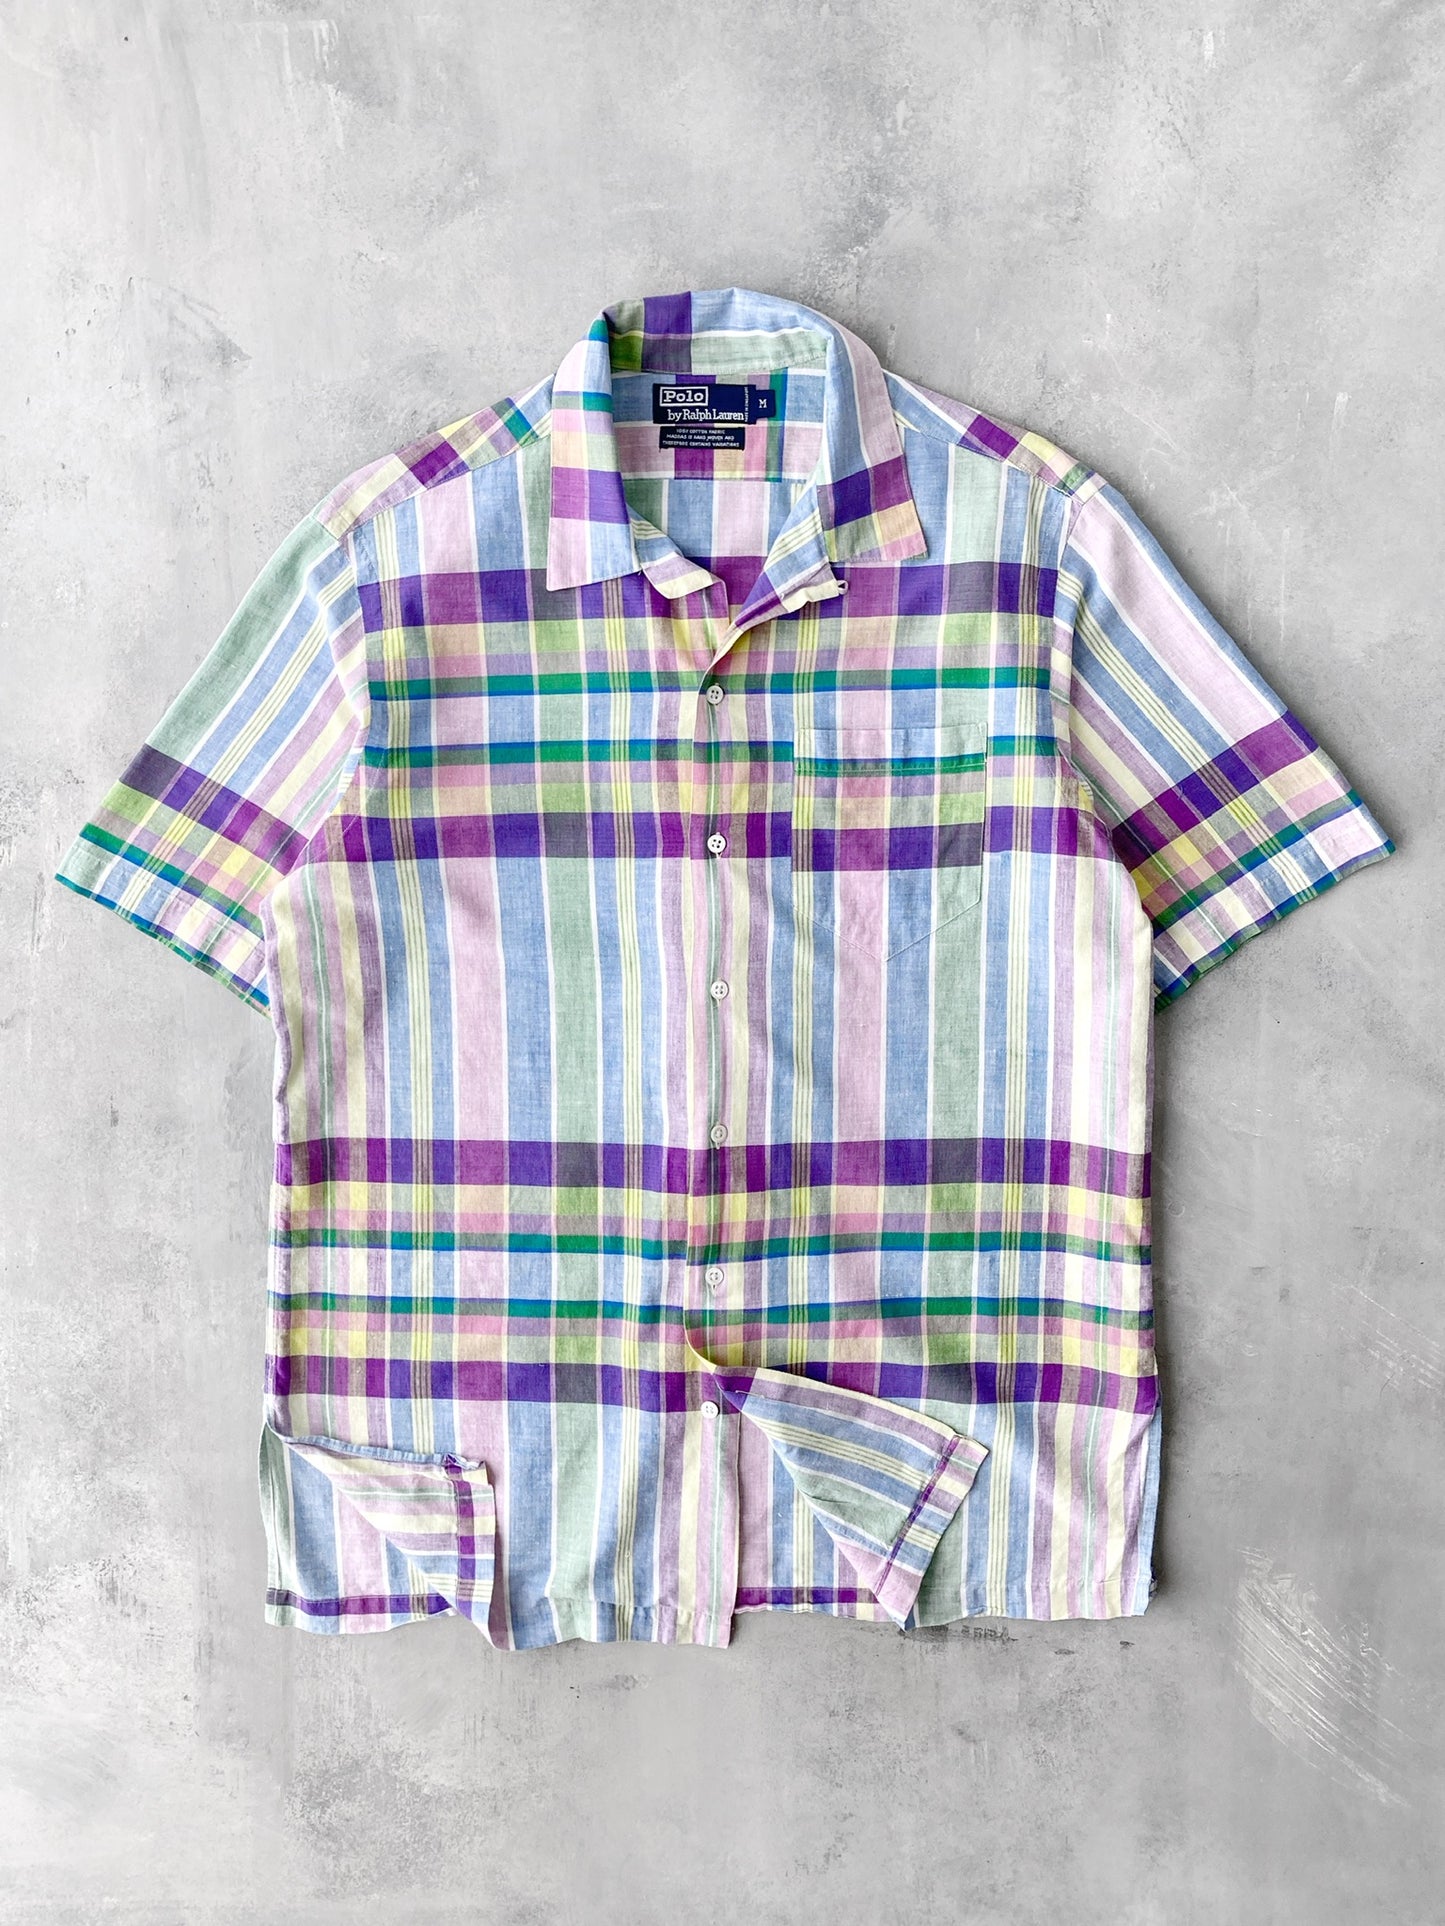 Polo Ralph Lauren Plaid Button Down Shirt 90's - Medium